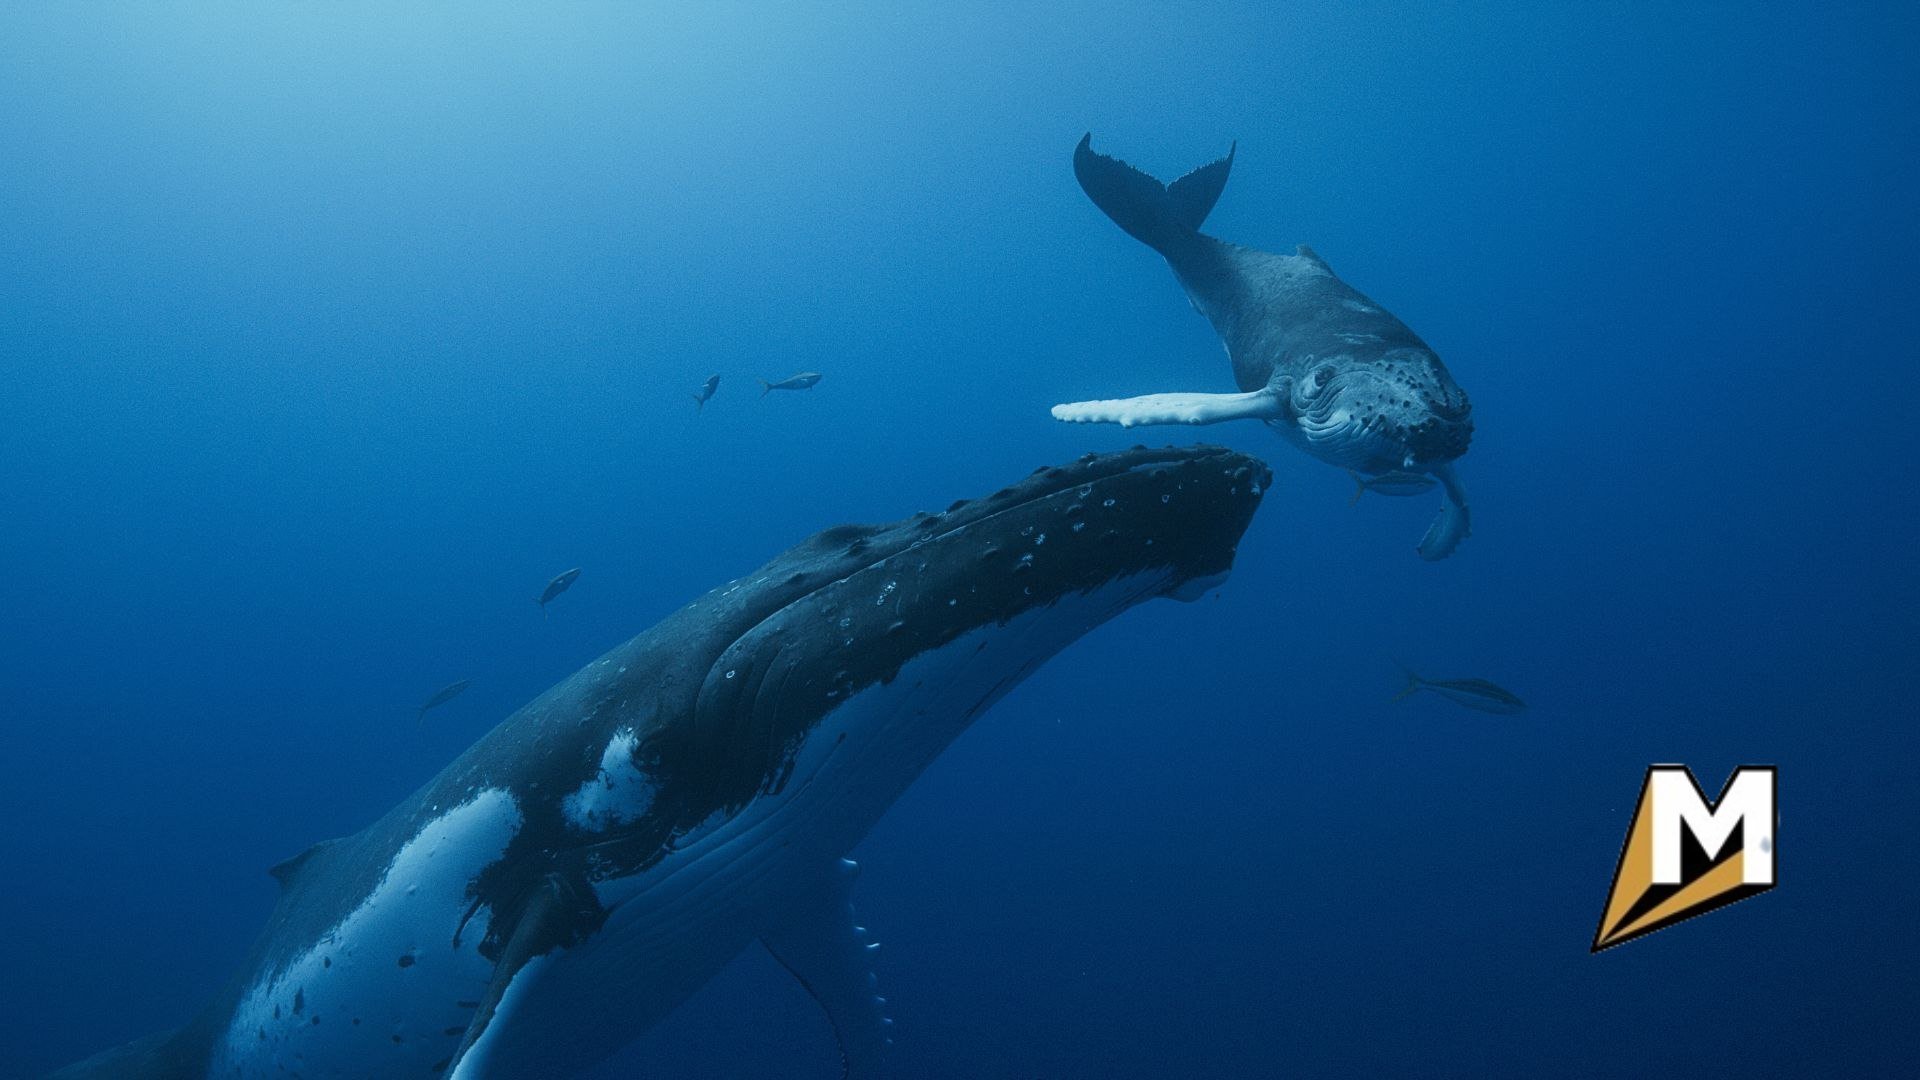 Zdjęcie przedstawia dwa duże stworzenia wodne (przypominające wieloryby) pływające pod wodą